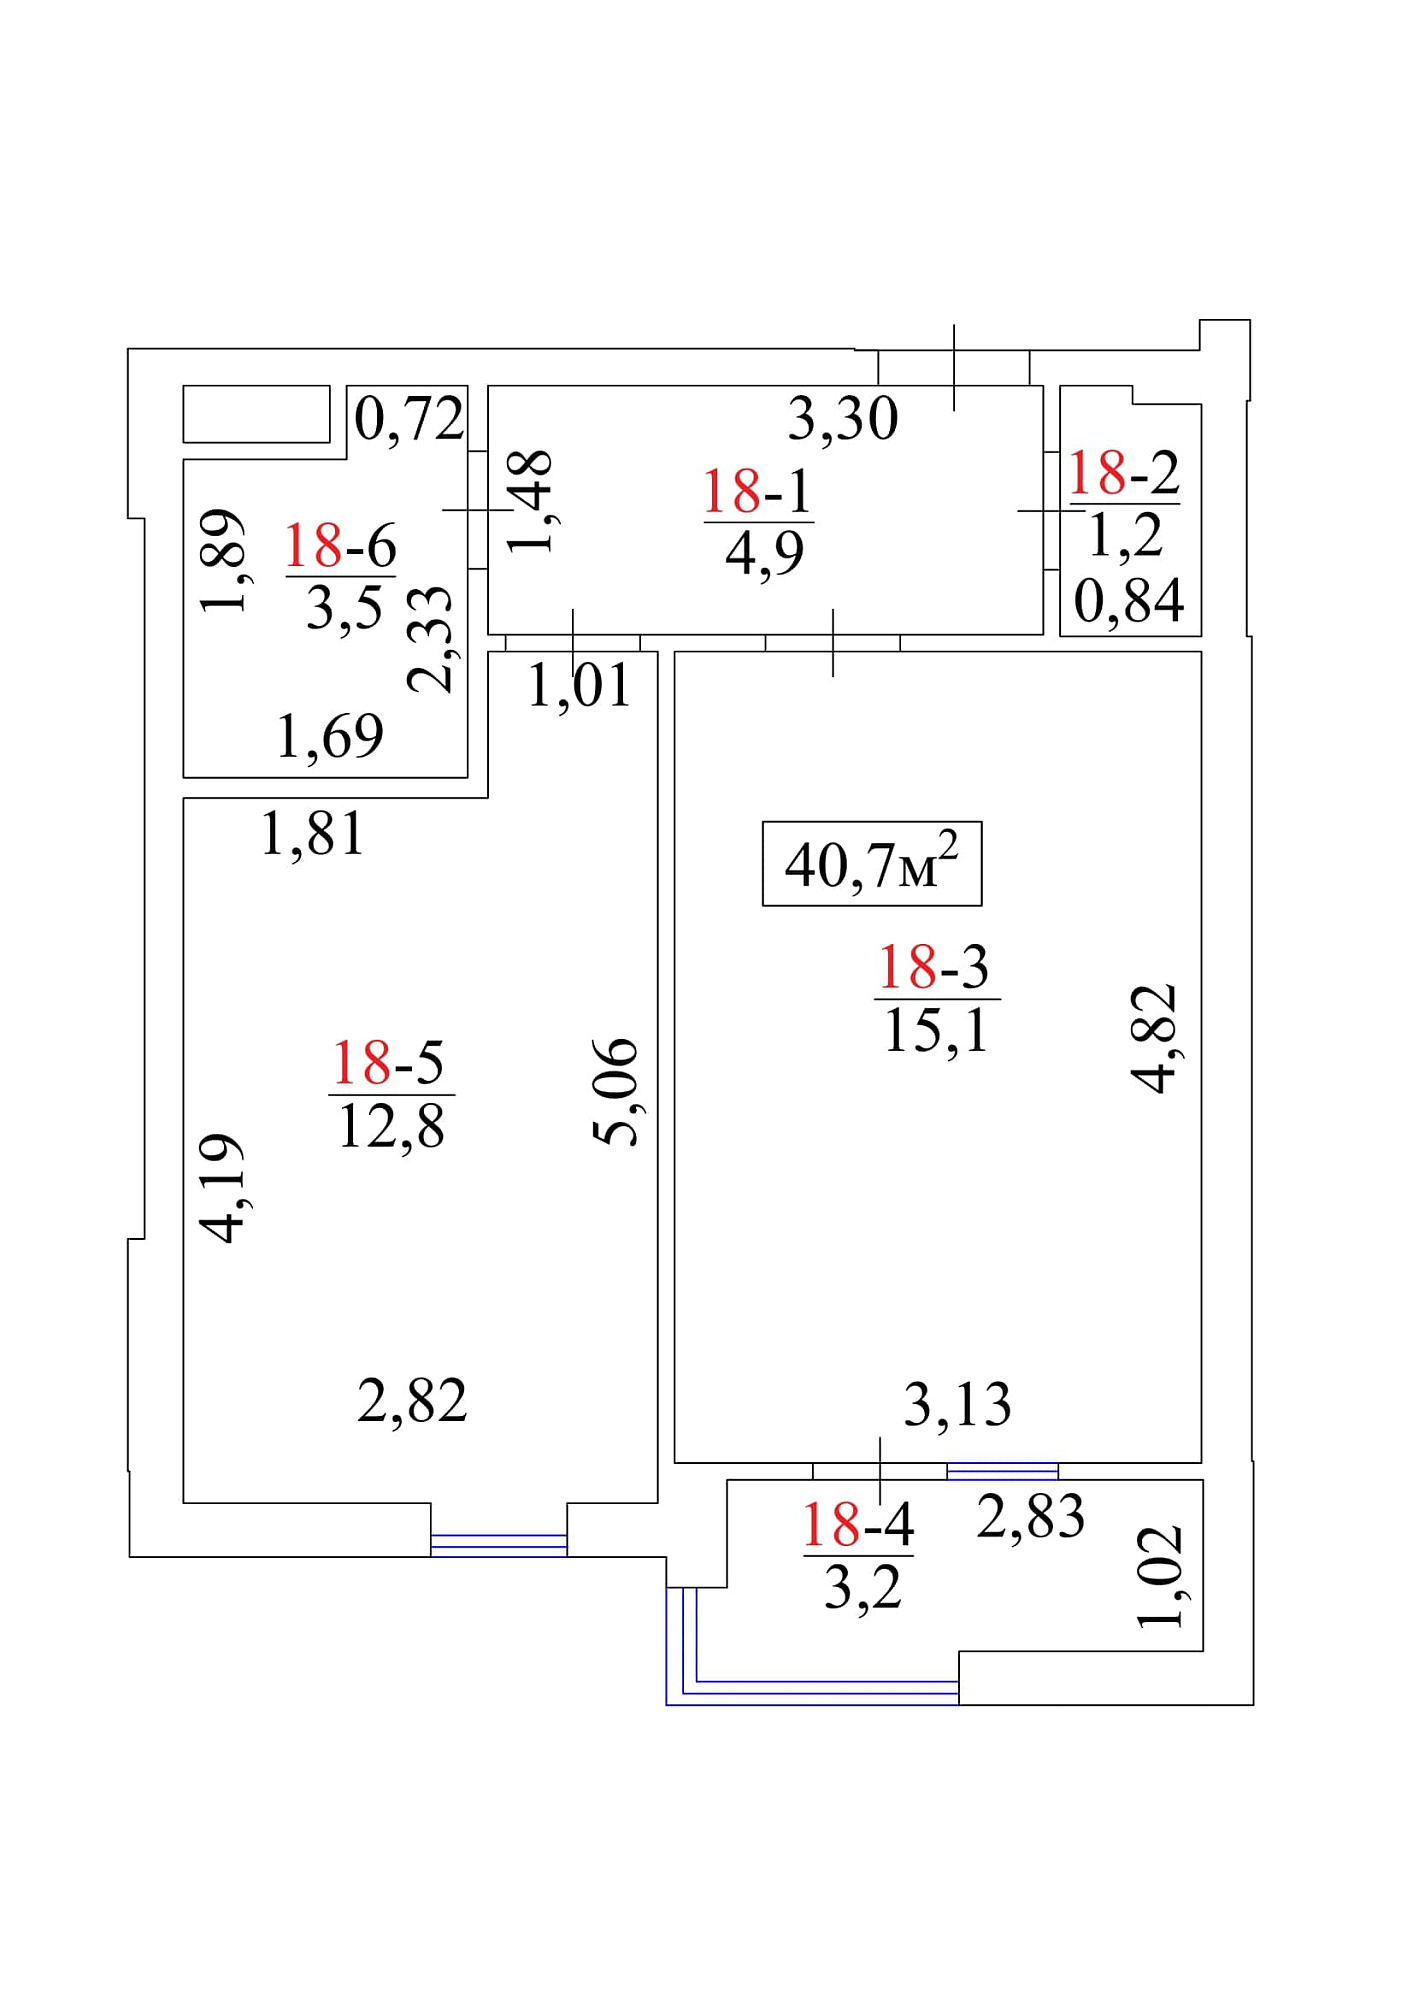 Планировка 1-к квартира площей 40.7м2, AB-01-03/00019.